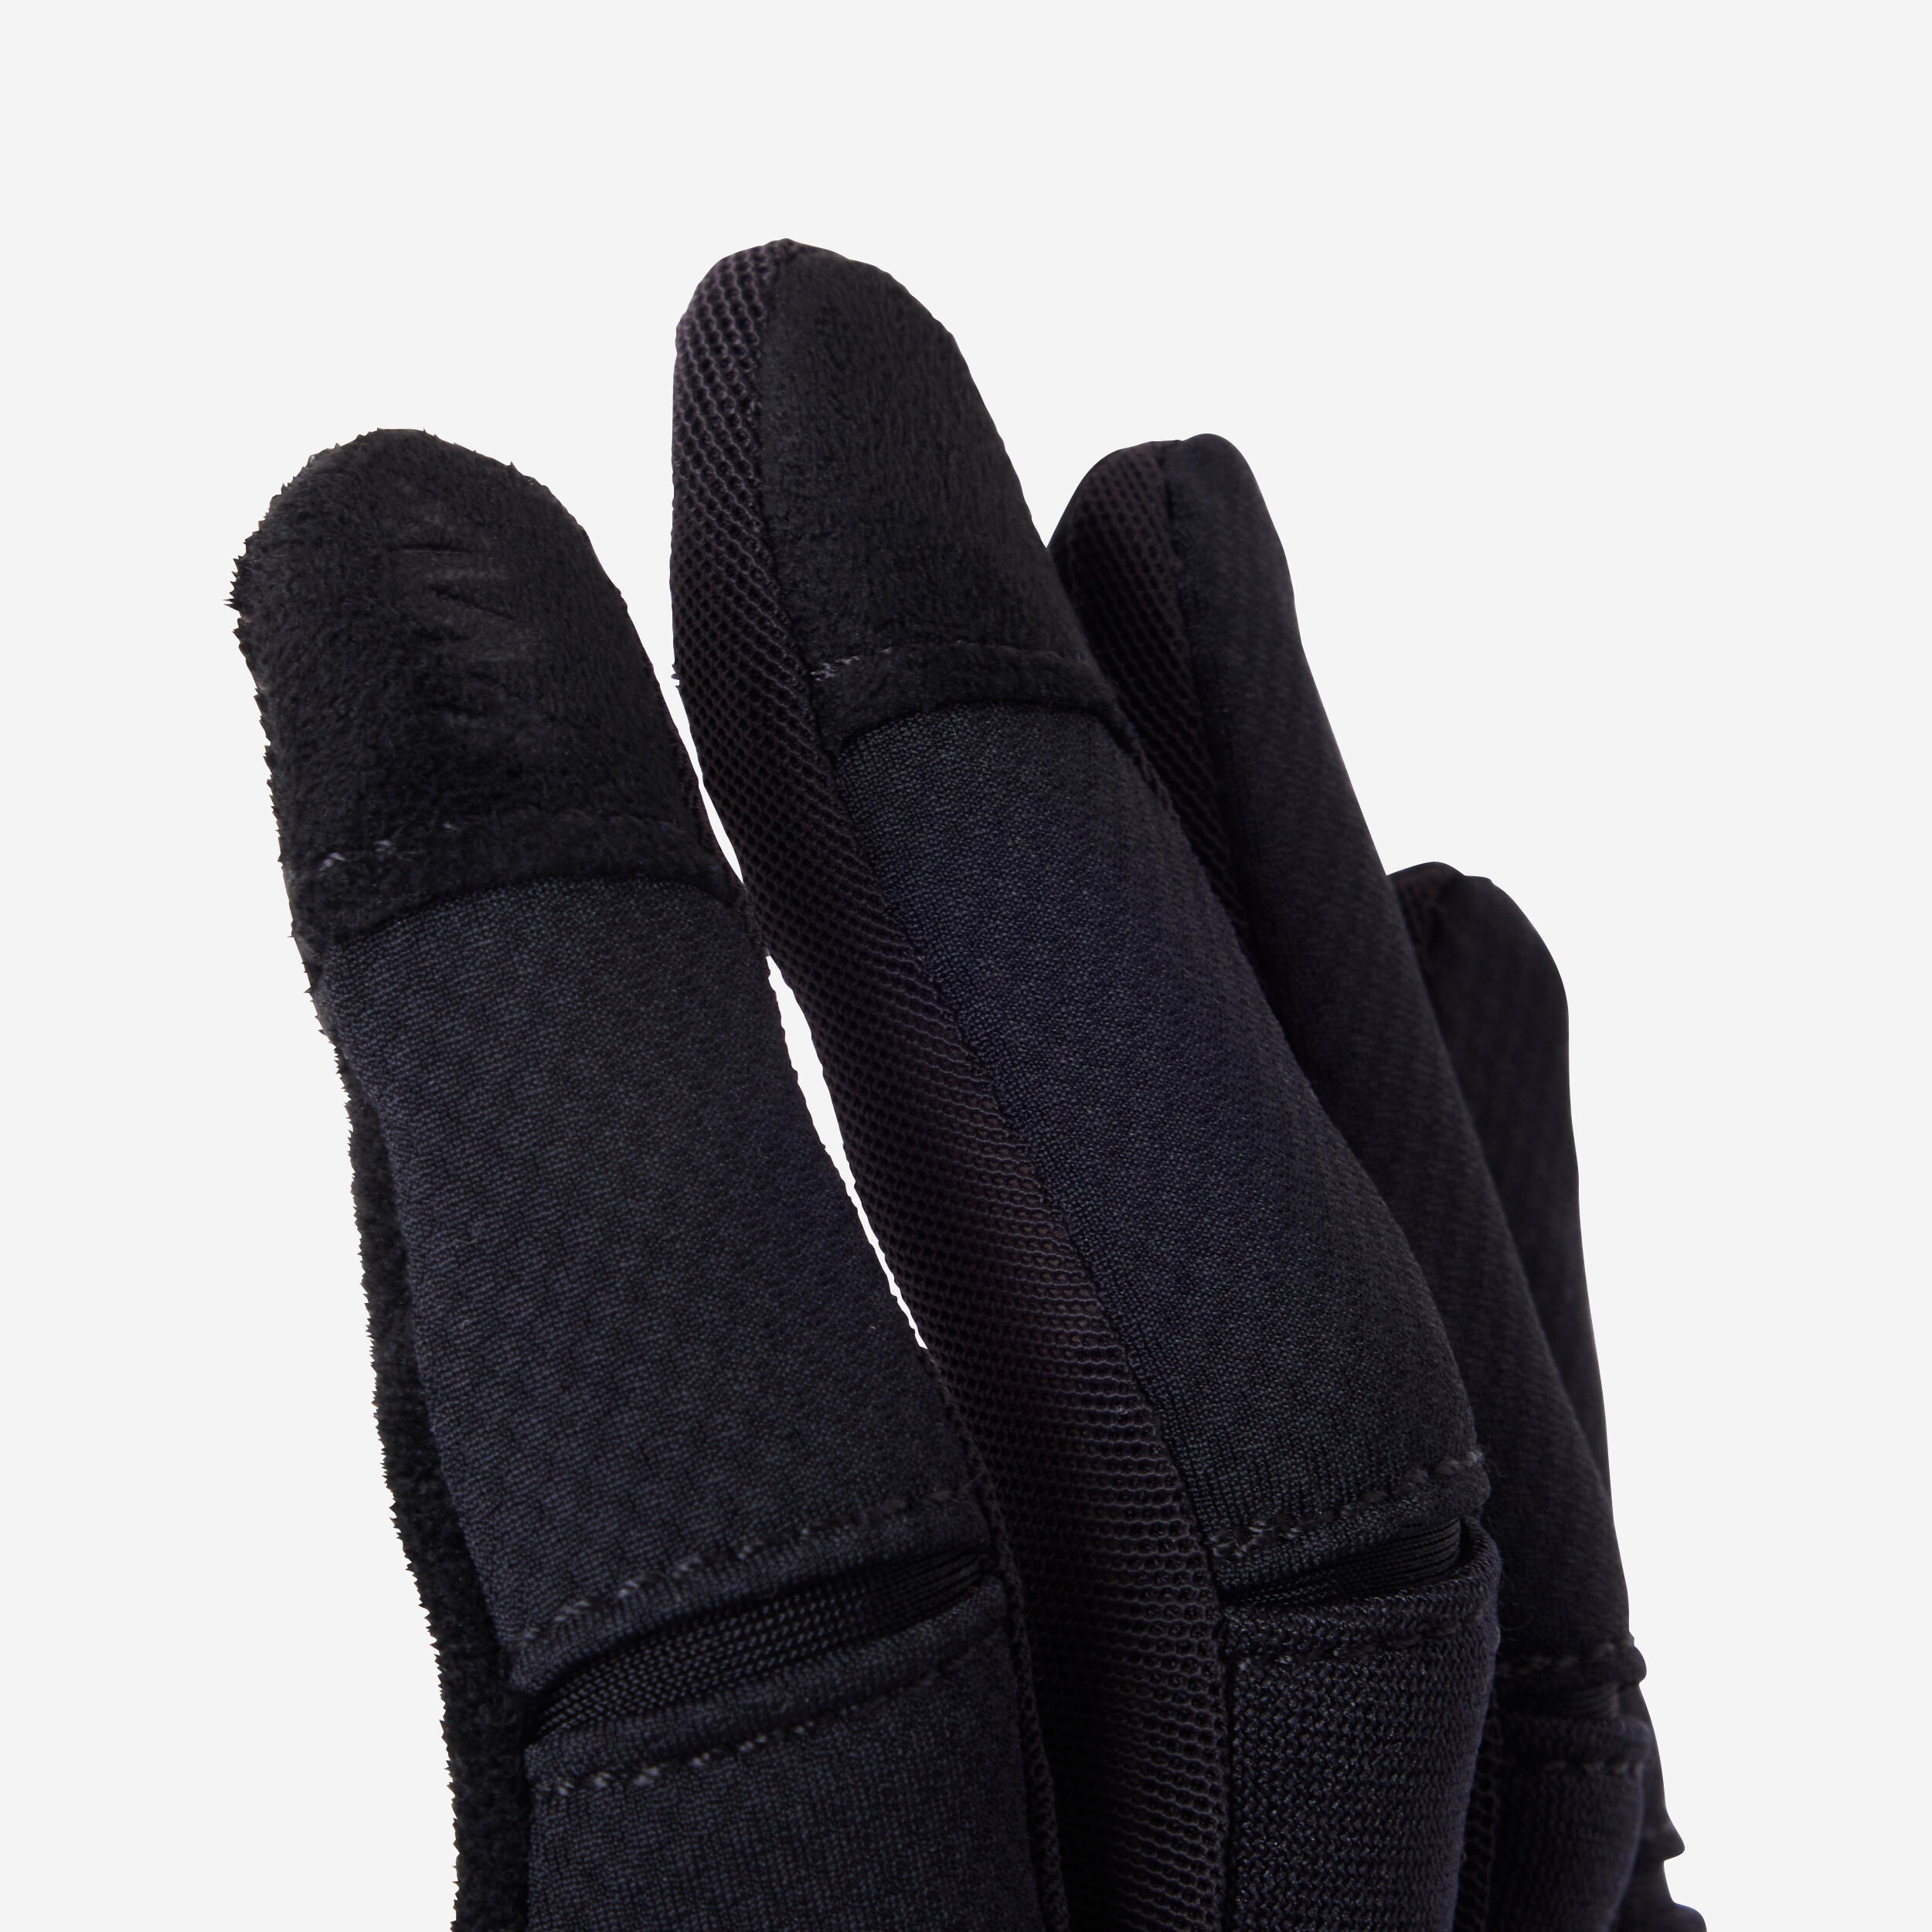 All Mountain Mountain Bike Gloves - Black 10/10